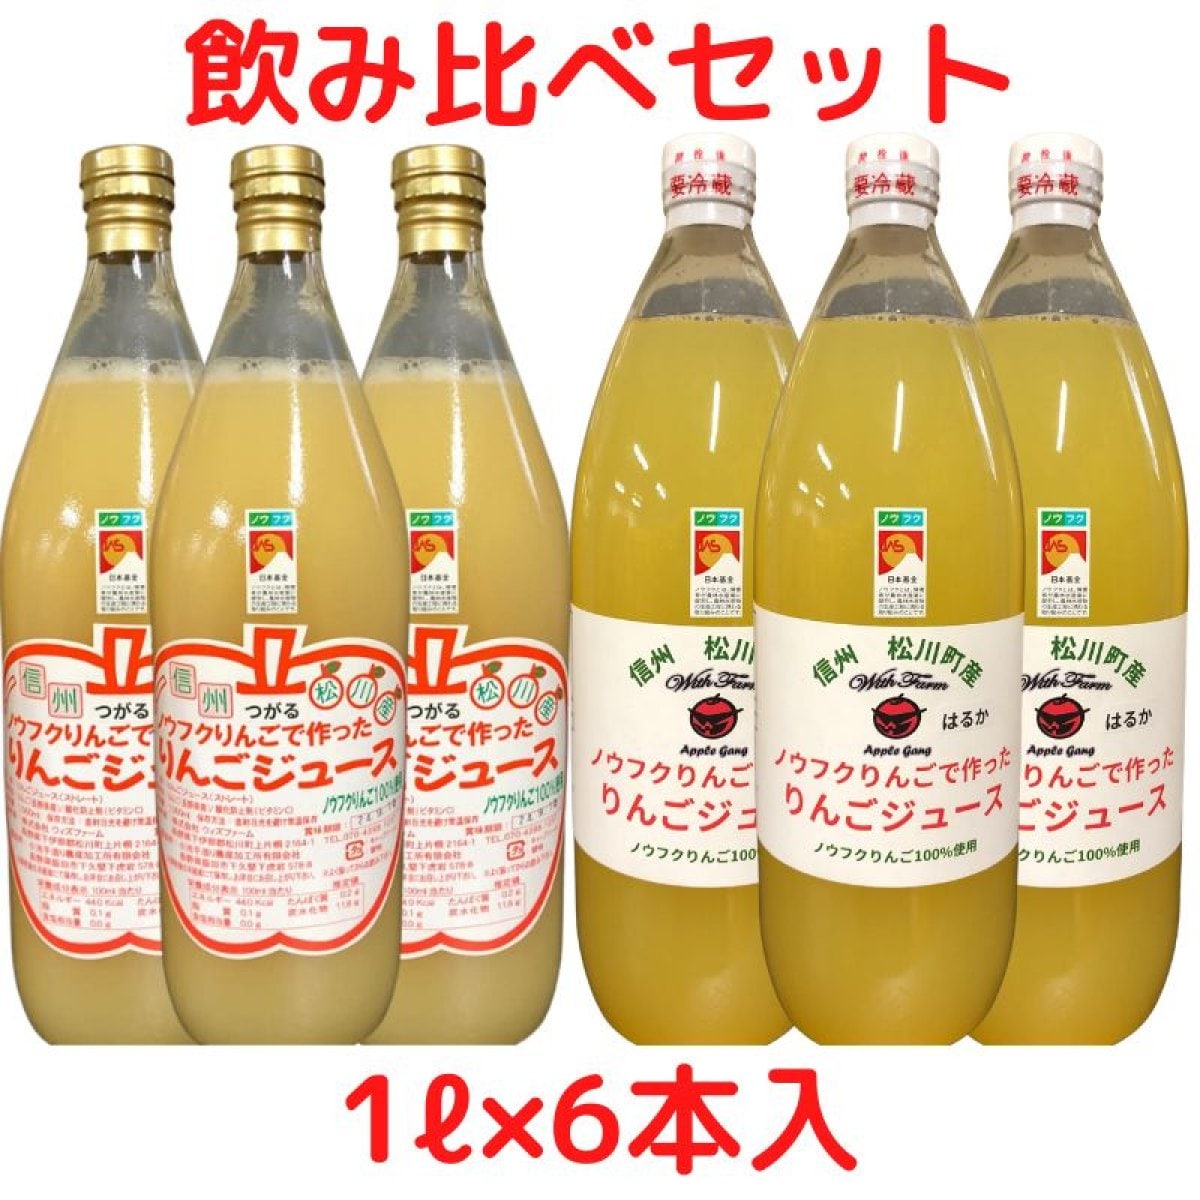 【1ℓ×6本入】ノウフクりんごで作ったりんごジュース飲み比べセット/6本